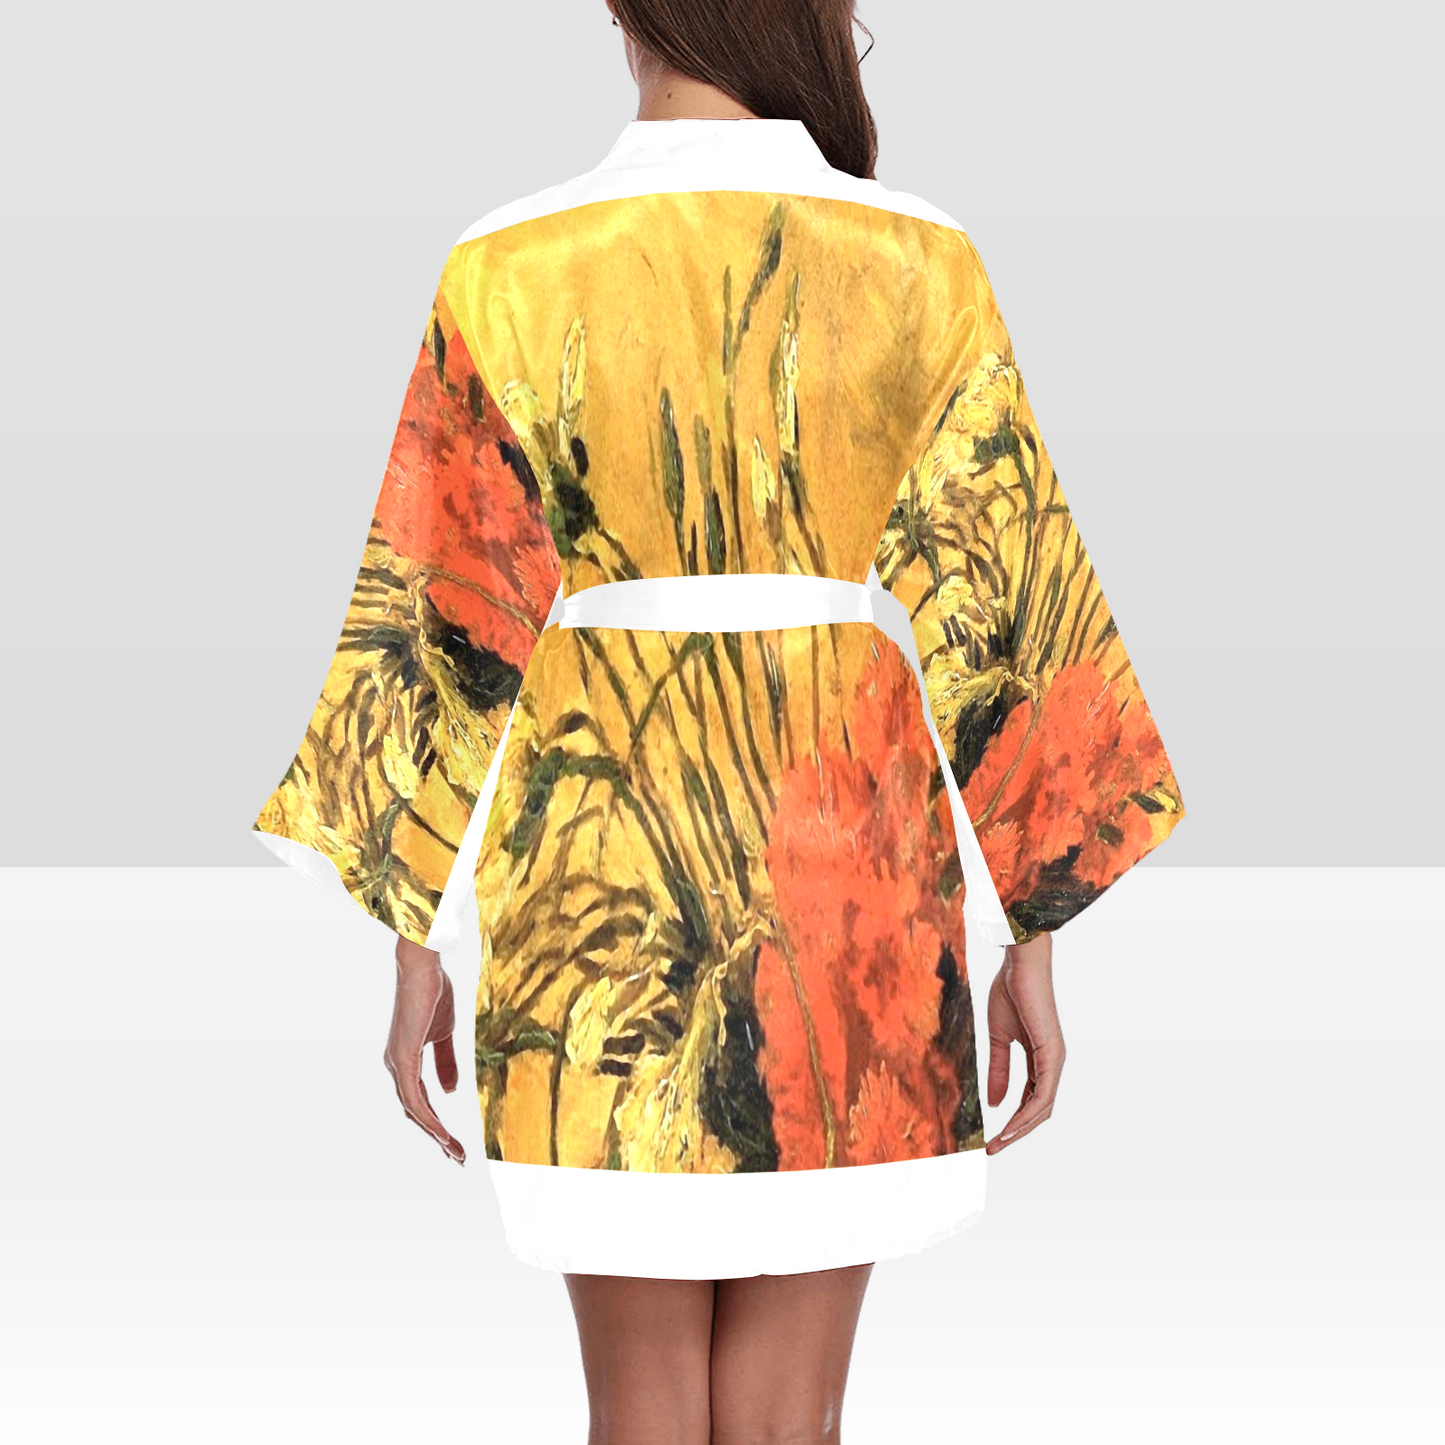 Vintage Floral Kimono Robe, Black or White Trim, Sizes XS to 2XL, Design 61